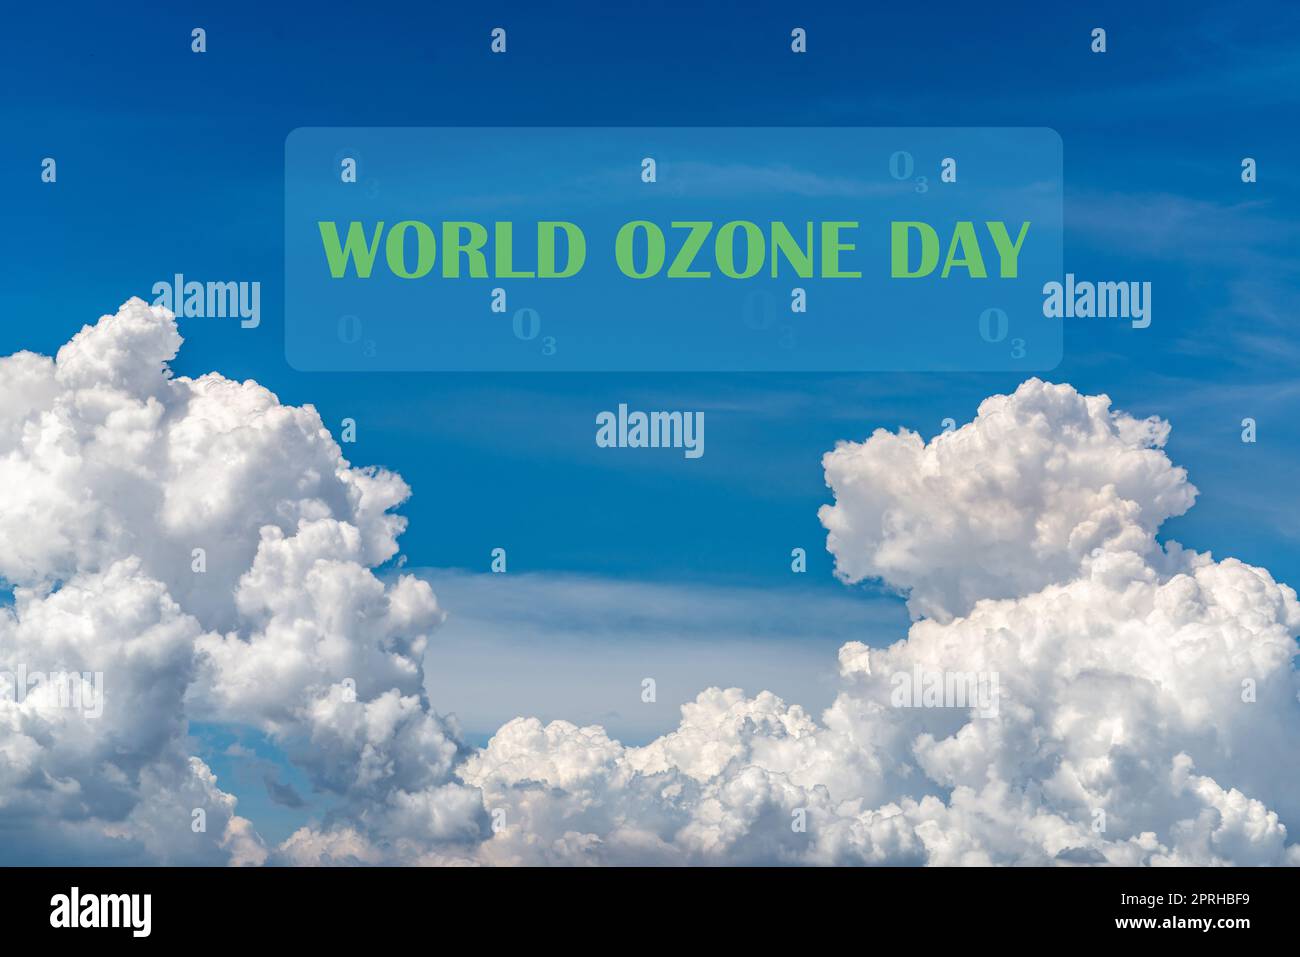 Weltozontag-Konzept. Internationaler Tag zur Erhaltung der Ozonschicht. Schöner blauer Himmel und weiße Wolken abstrakter Hintergrund. Wolkenuntergrund. Blauer Himmel und flauschige weiße Wolken. Stockfoto